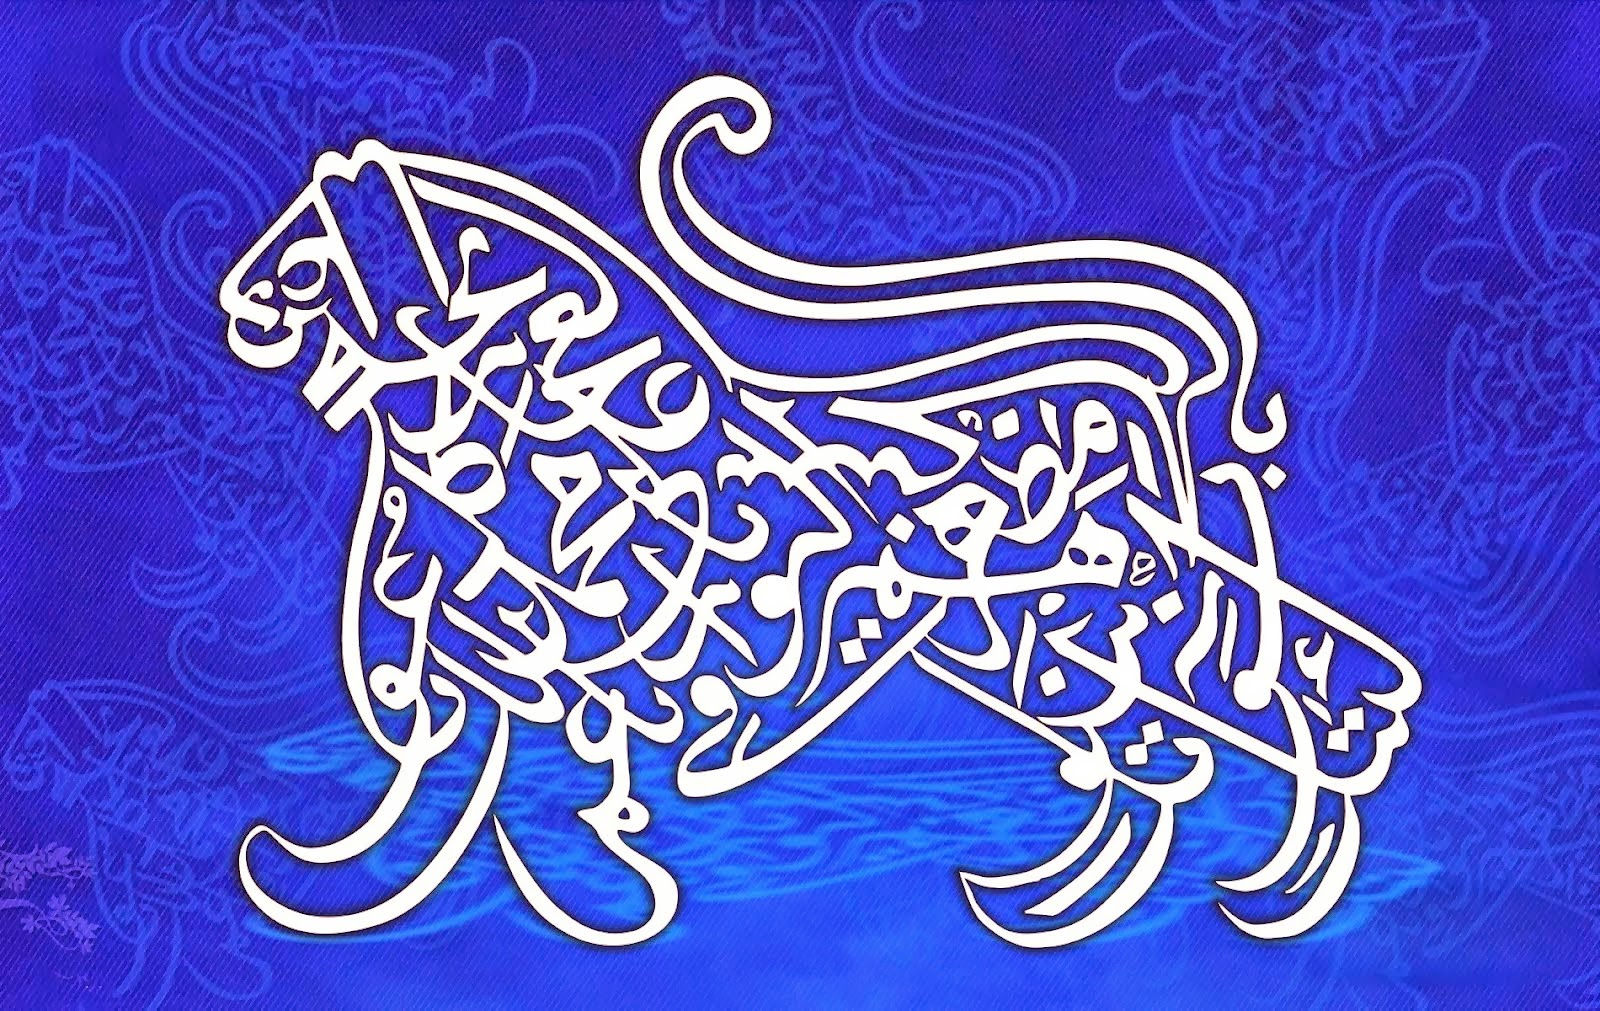 Koleksi Gambar Kaligrafi Ayat Al Quran Bergerak Terbaru 2018 Sapawarga